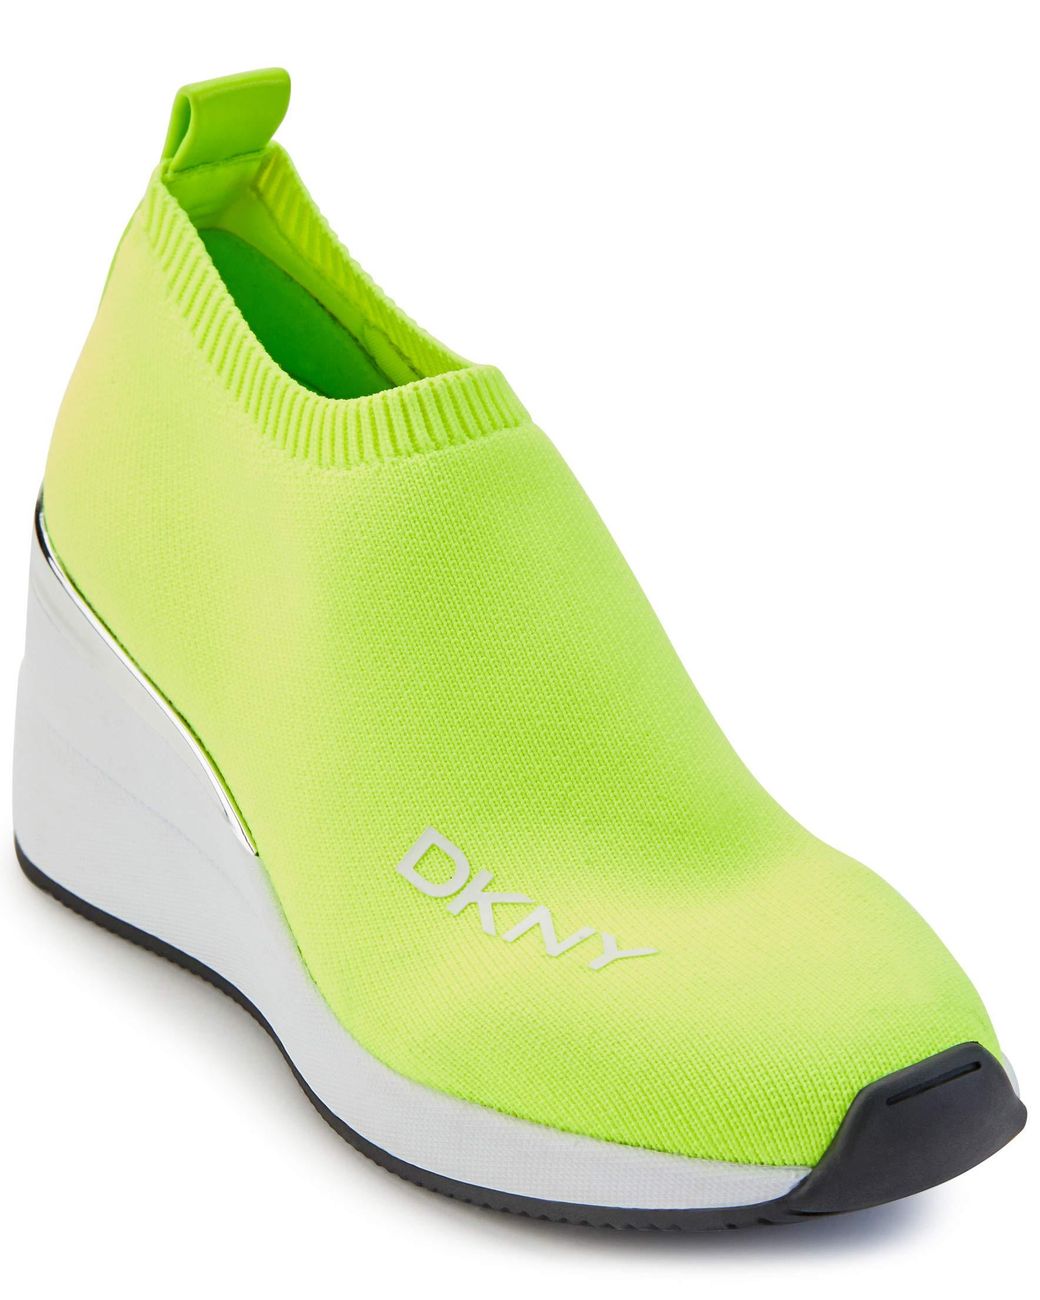 DKNY Parks Sneaker in Neon Green (Green) - Lyst